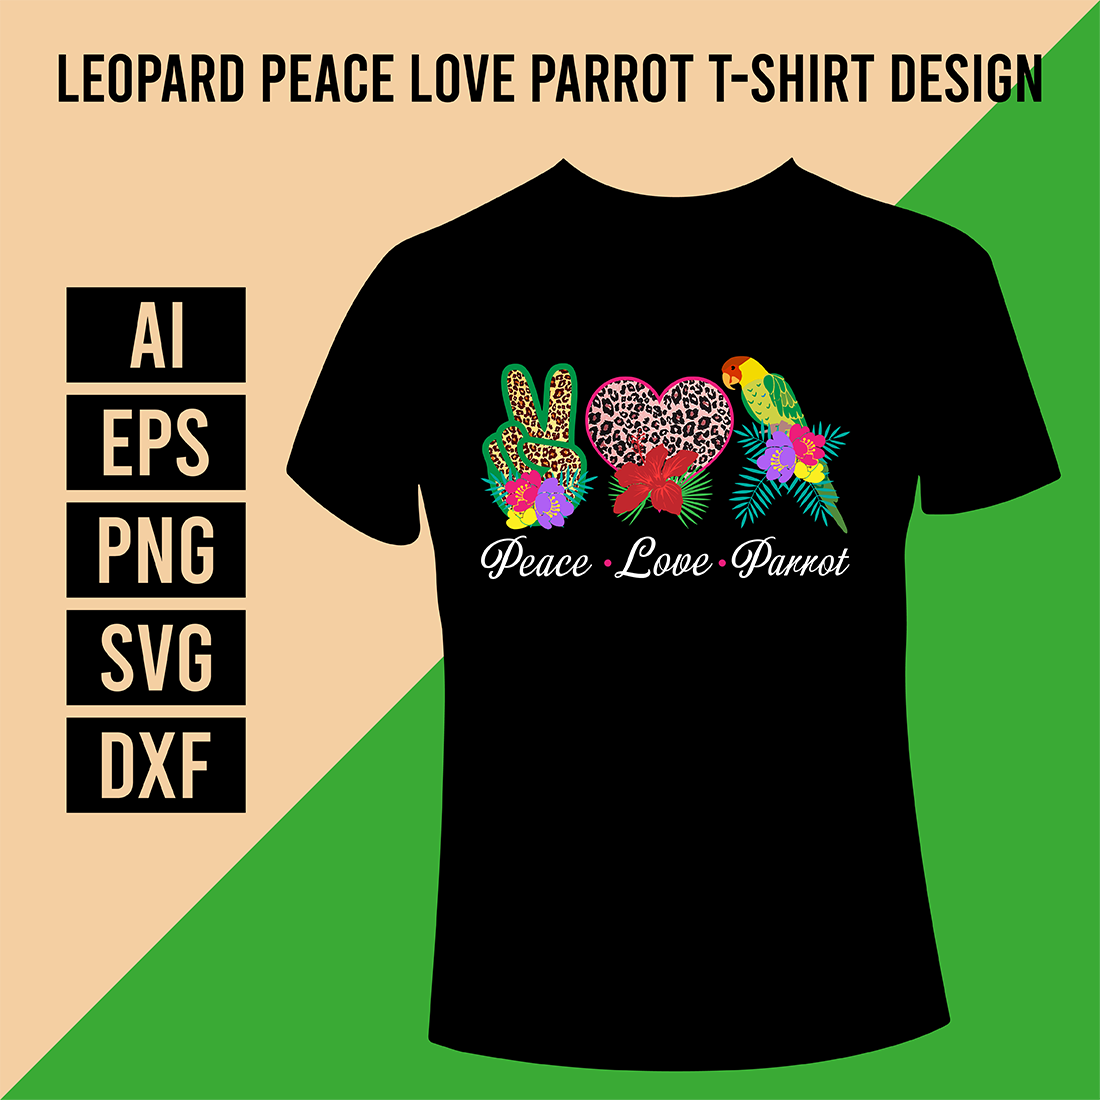 Leopard Peace Love Parrot T-Shirt Design cover image.